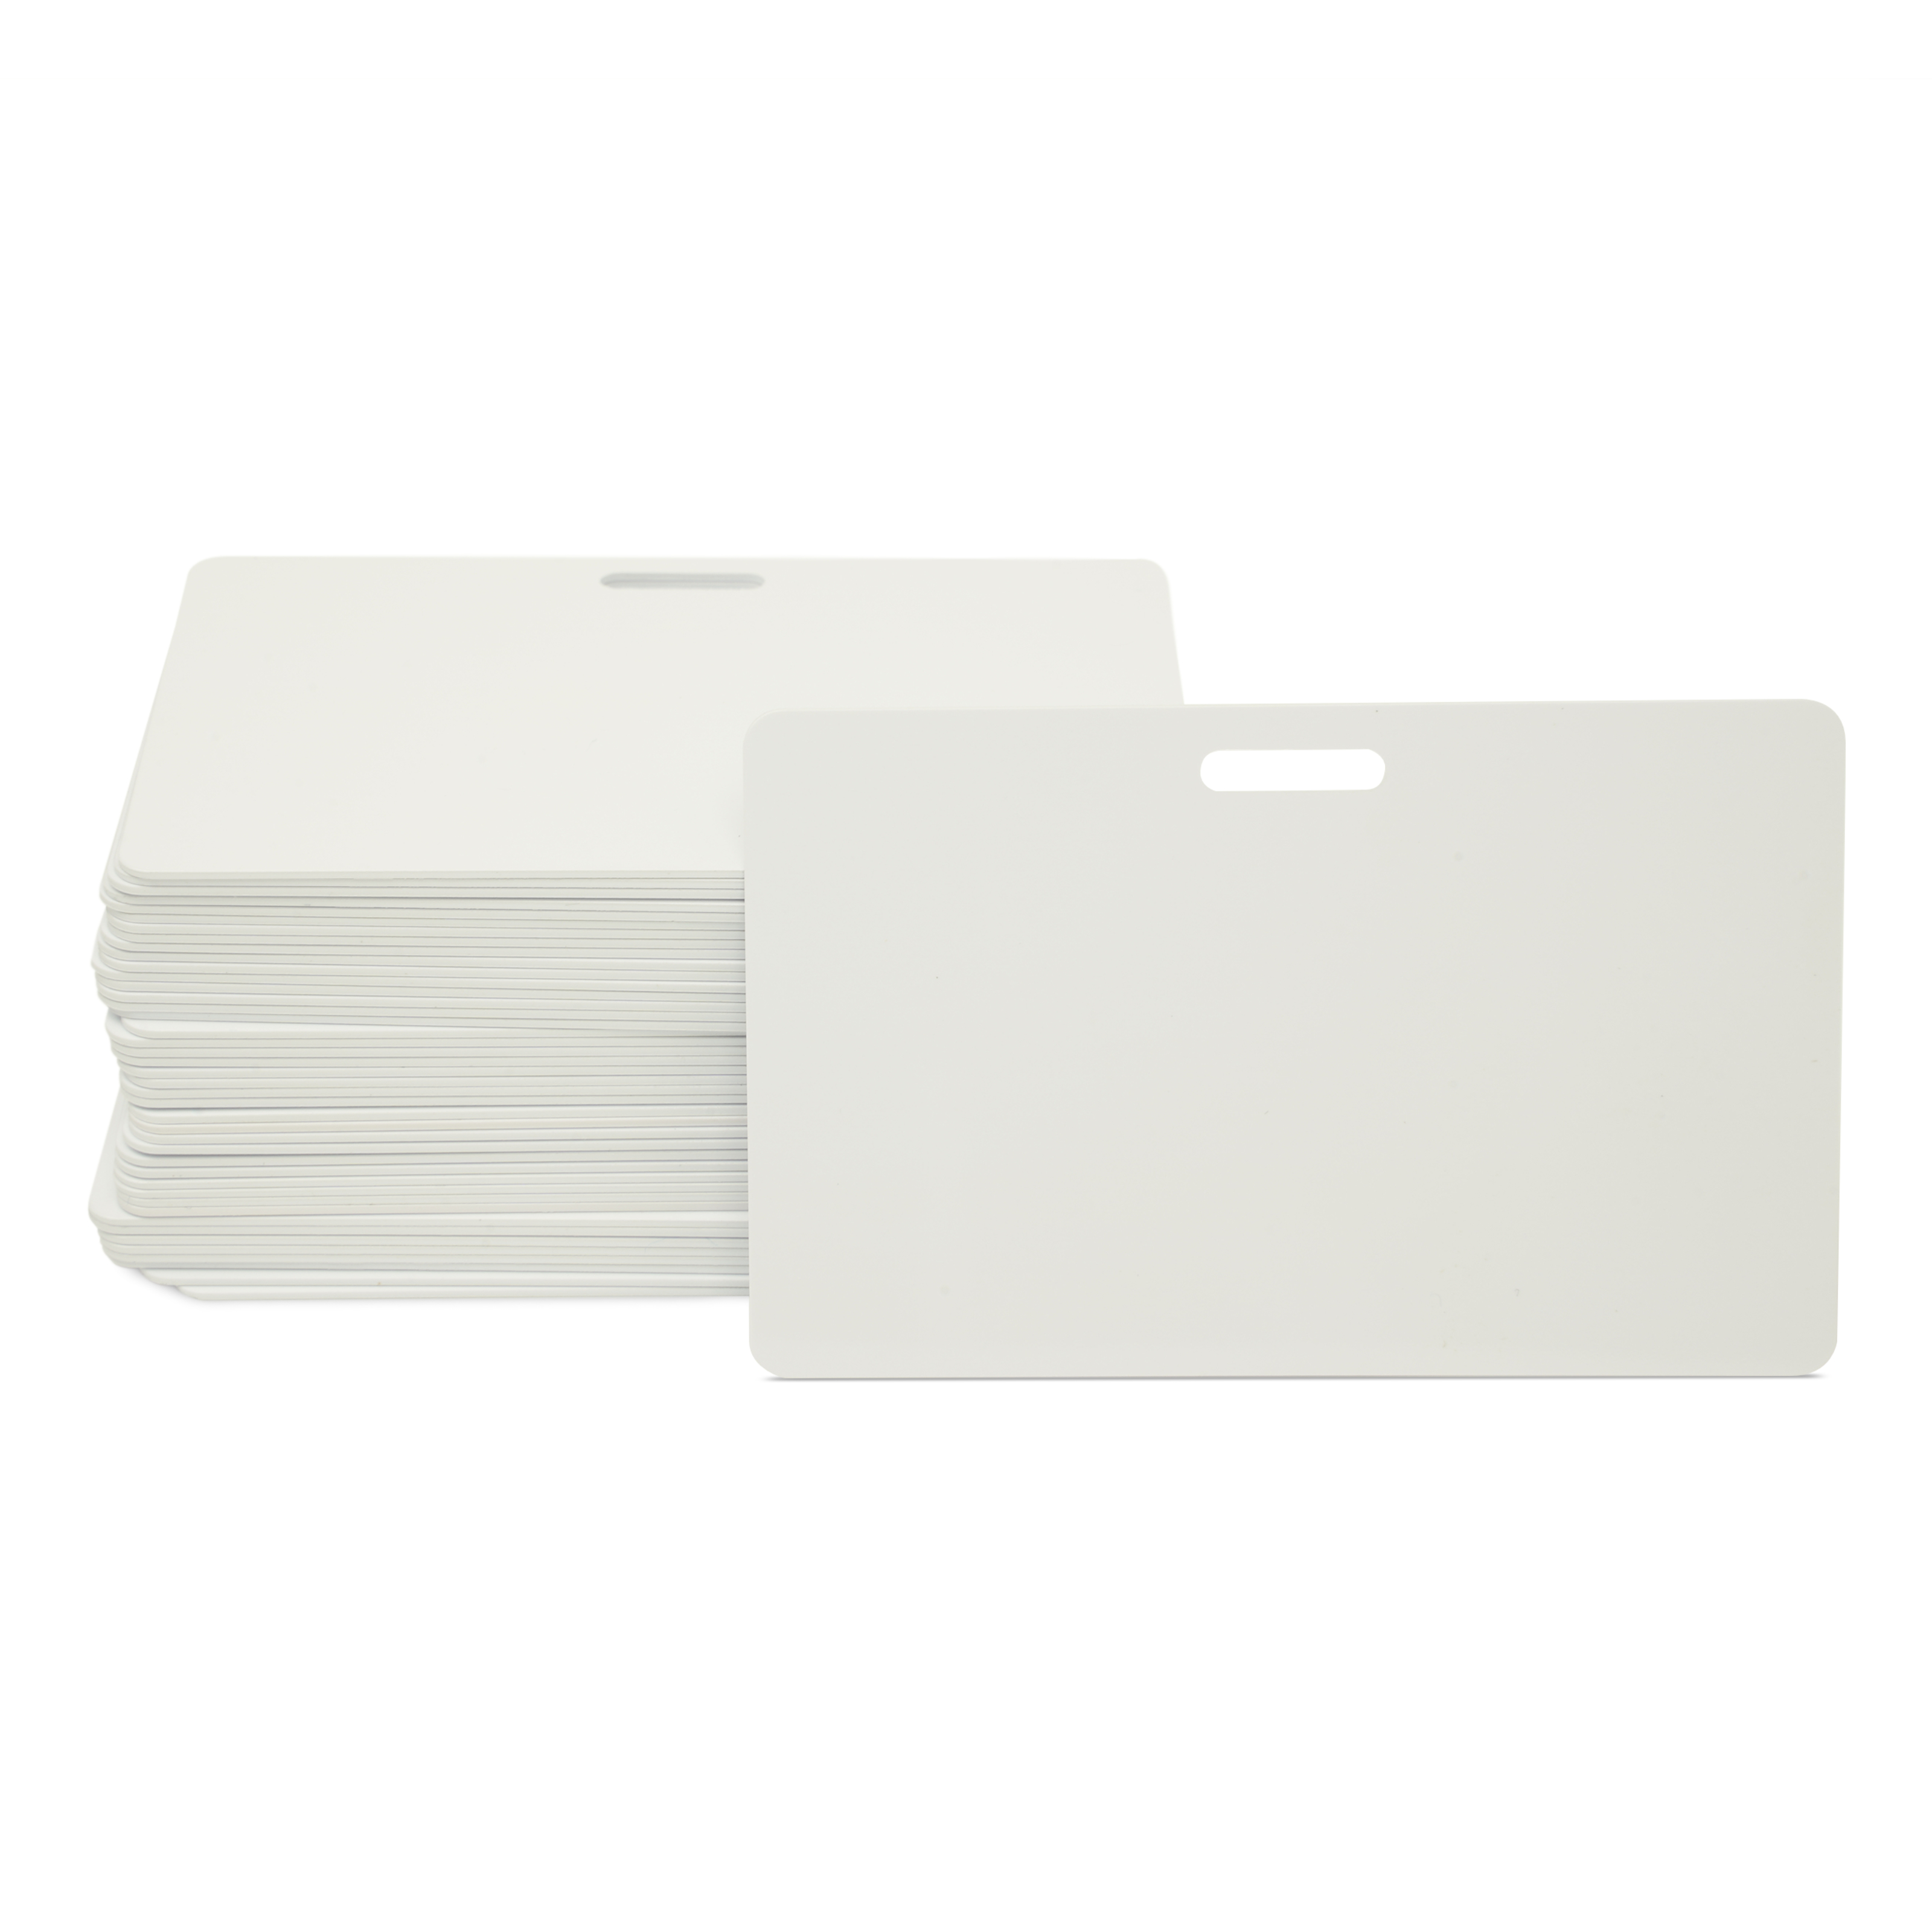 Stapel mit mehreren NFC Karten in weiß mit Schlitz im Querformat